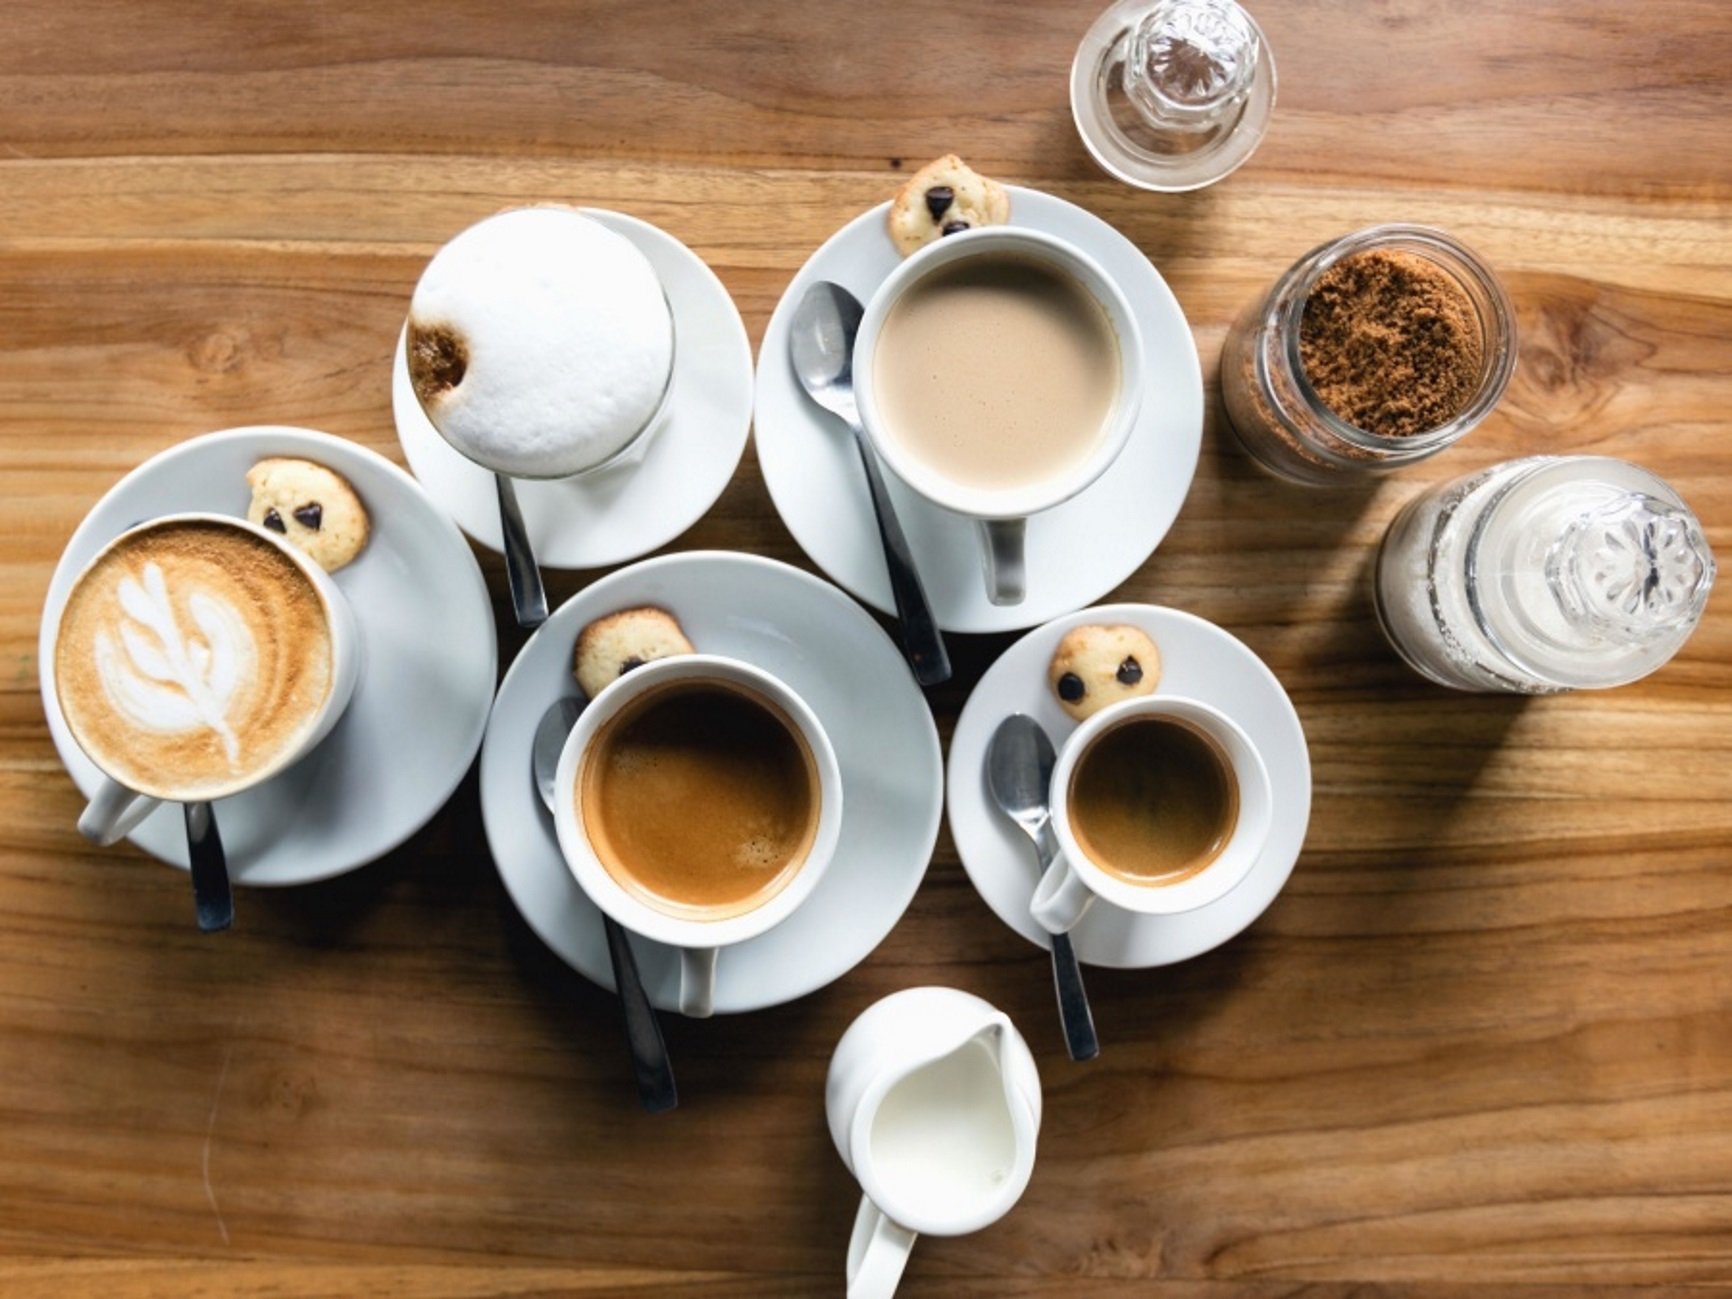 Veure (sense beure) cafè ja estimula el cervell